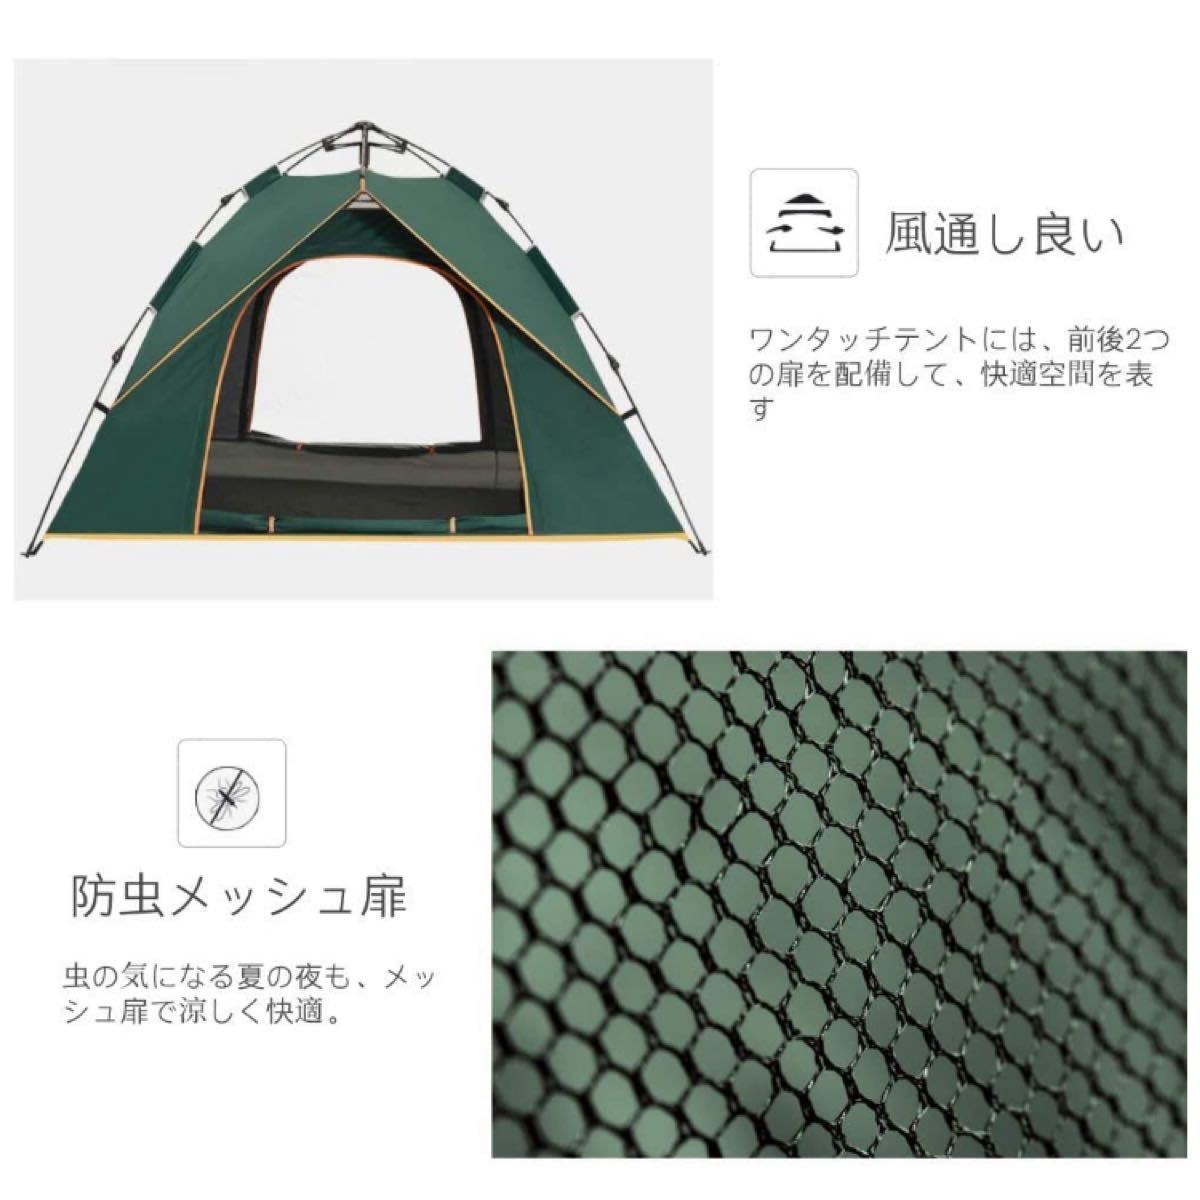 自動式テント 防水 防雨 日焼け止め 二重層構造 ブルー